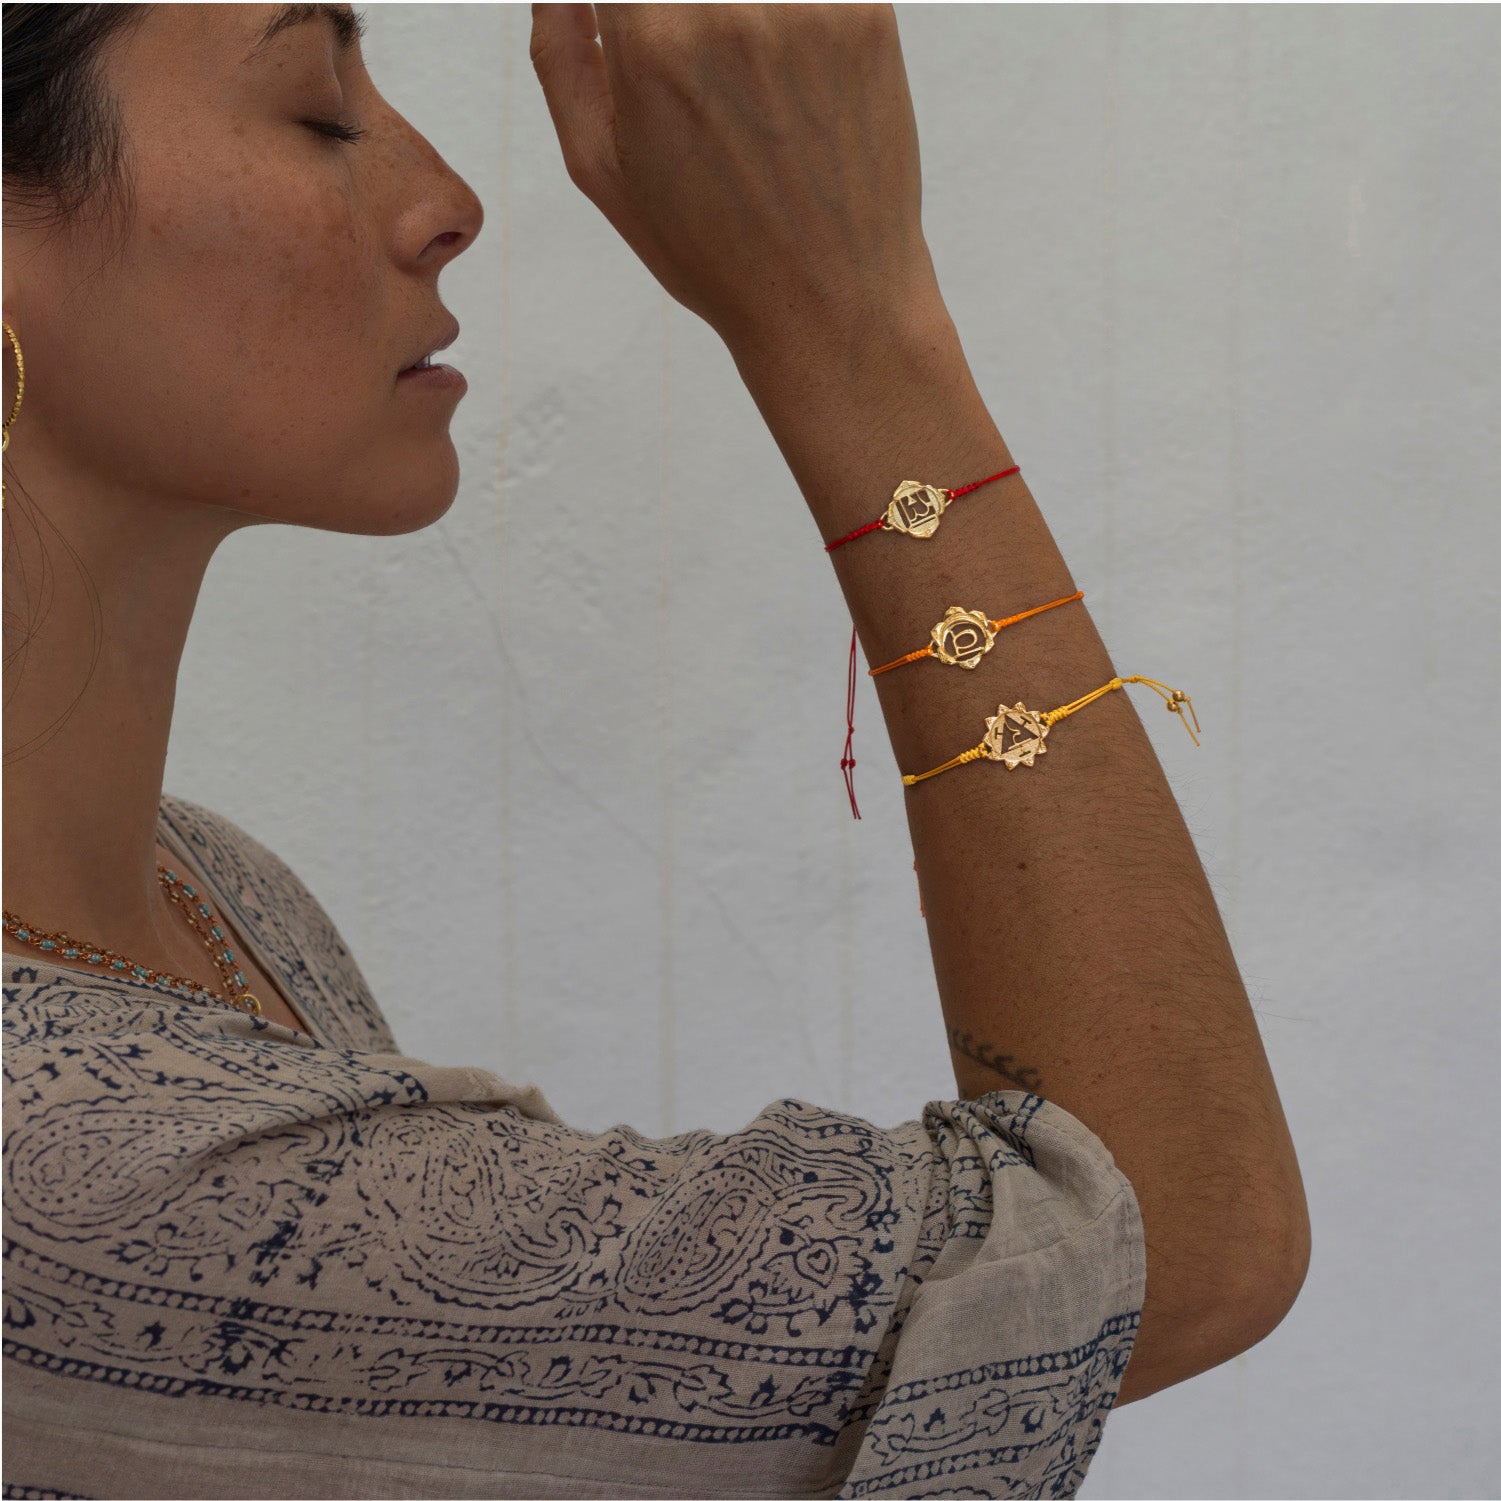 Die Yoga Lehrerin Steffi trägt ein hochwertig vergoldetes Solar Plexus Chakra Armband von ETERNAL BLISS - Spiritueller Schmuck